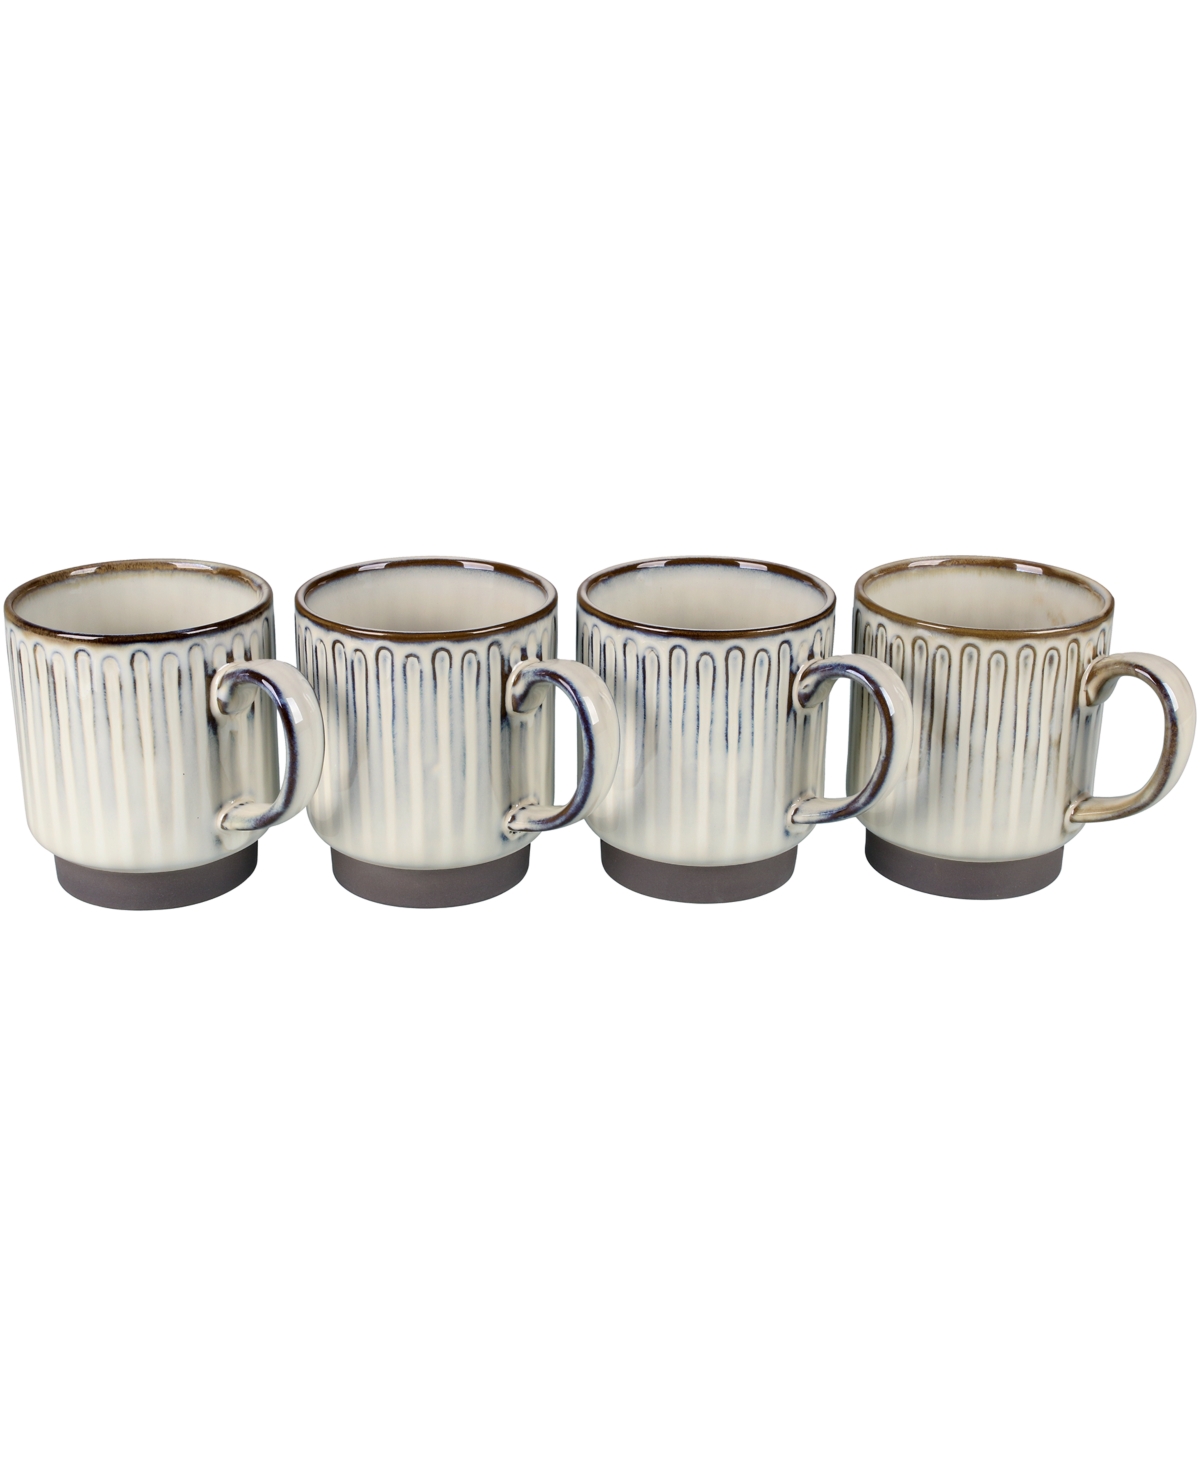 15313444 Bia Cordon Bleu Colonnade Set of Four Mugs, 16 oz sku 15313444